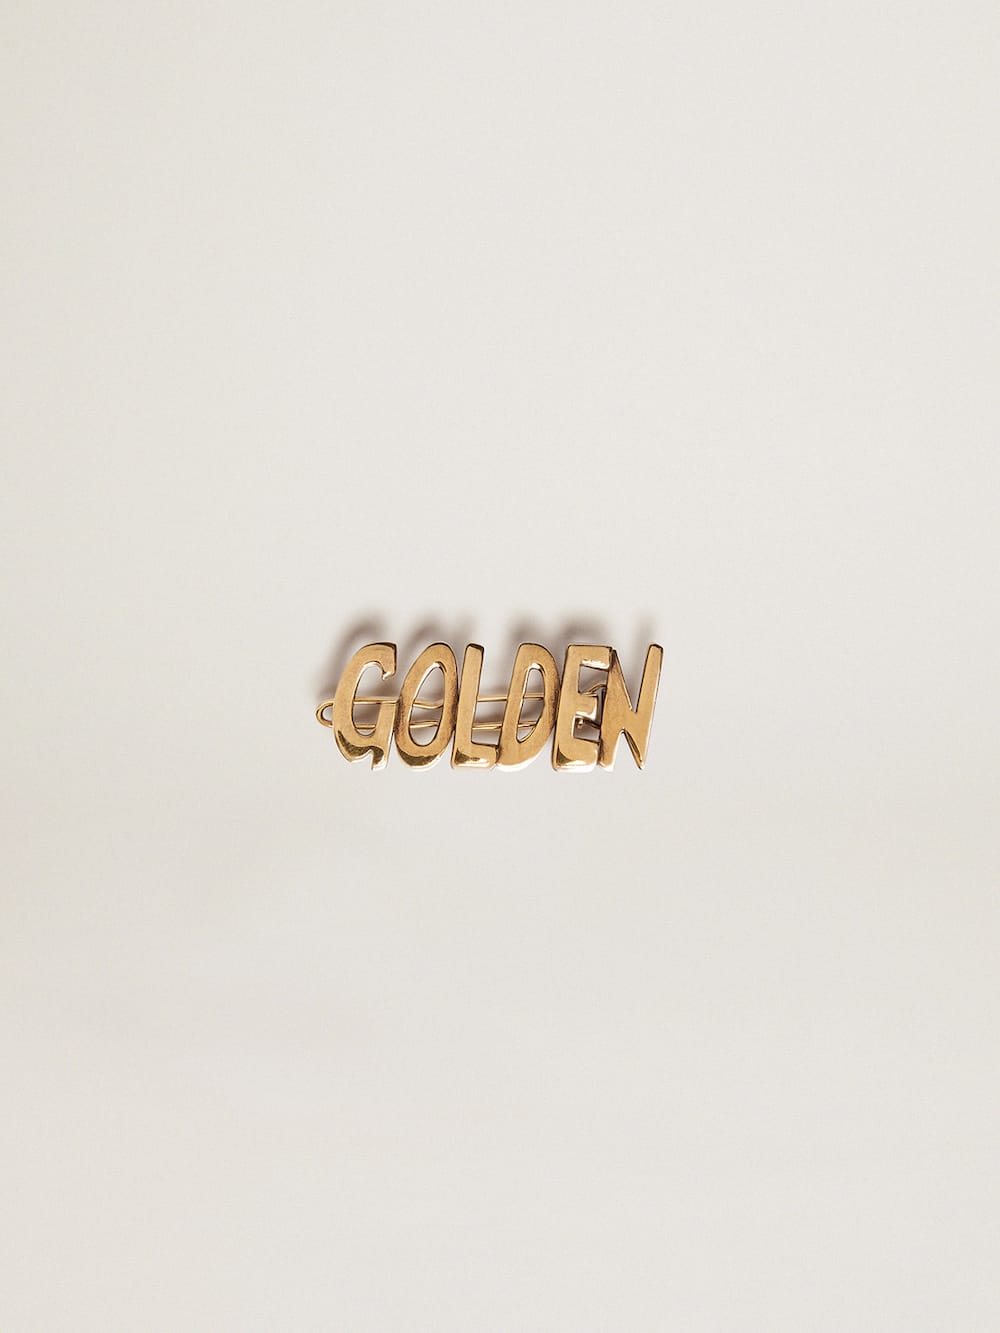 Golden Goose - Herrenschnürsenkel-Schloss mit Clip in Altgold mit Golden-Schriftzug in 